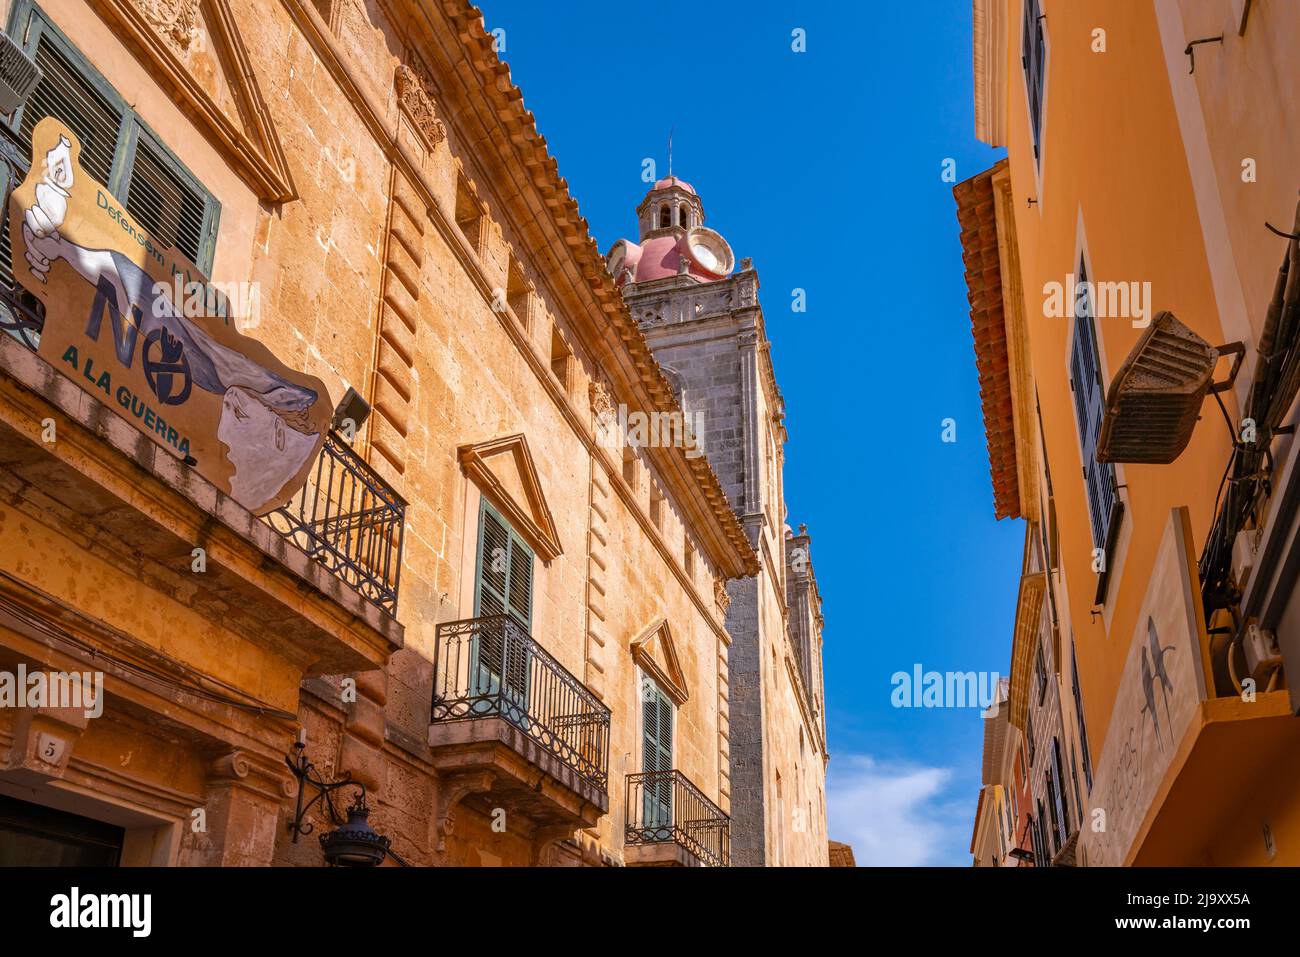 View of Le Couvent et le Cloître de Saint Augustin in narrow street, Ciutadella, Menorca, Balearic Islands, Spain, Europe Stock Photo